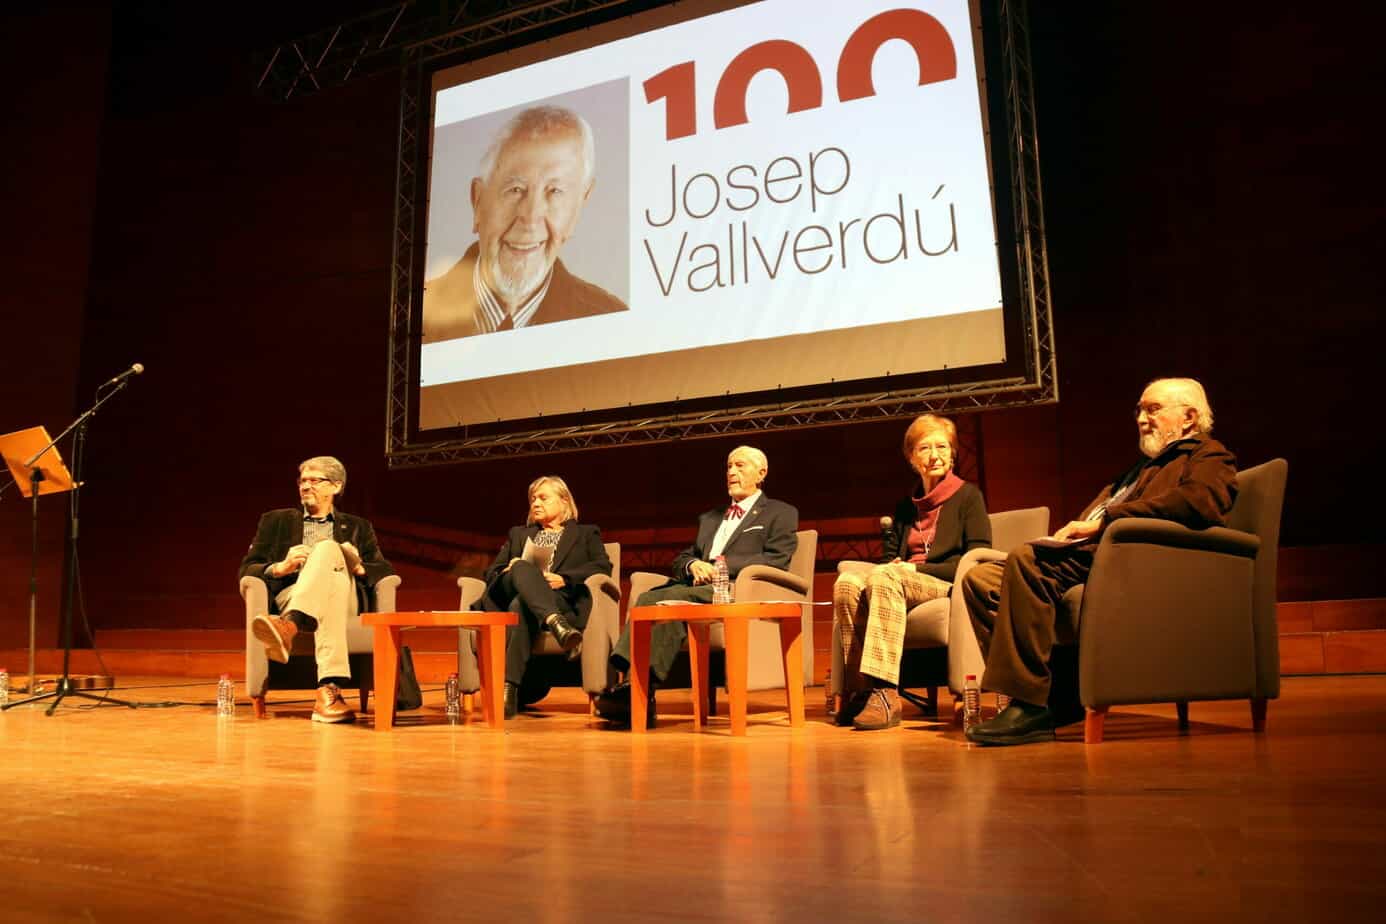 L’Any Vallverdú arrenca a Lleida amb el repte de donar a conèixer l’autor “en totes les dimensions i gèneres literaris”